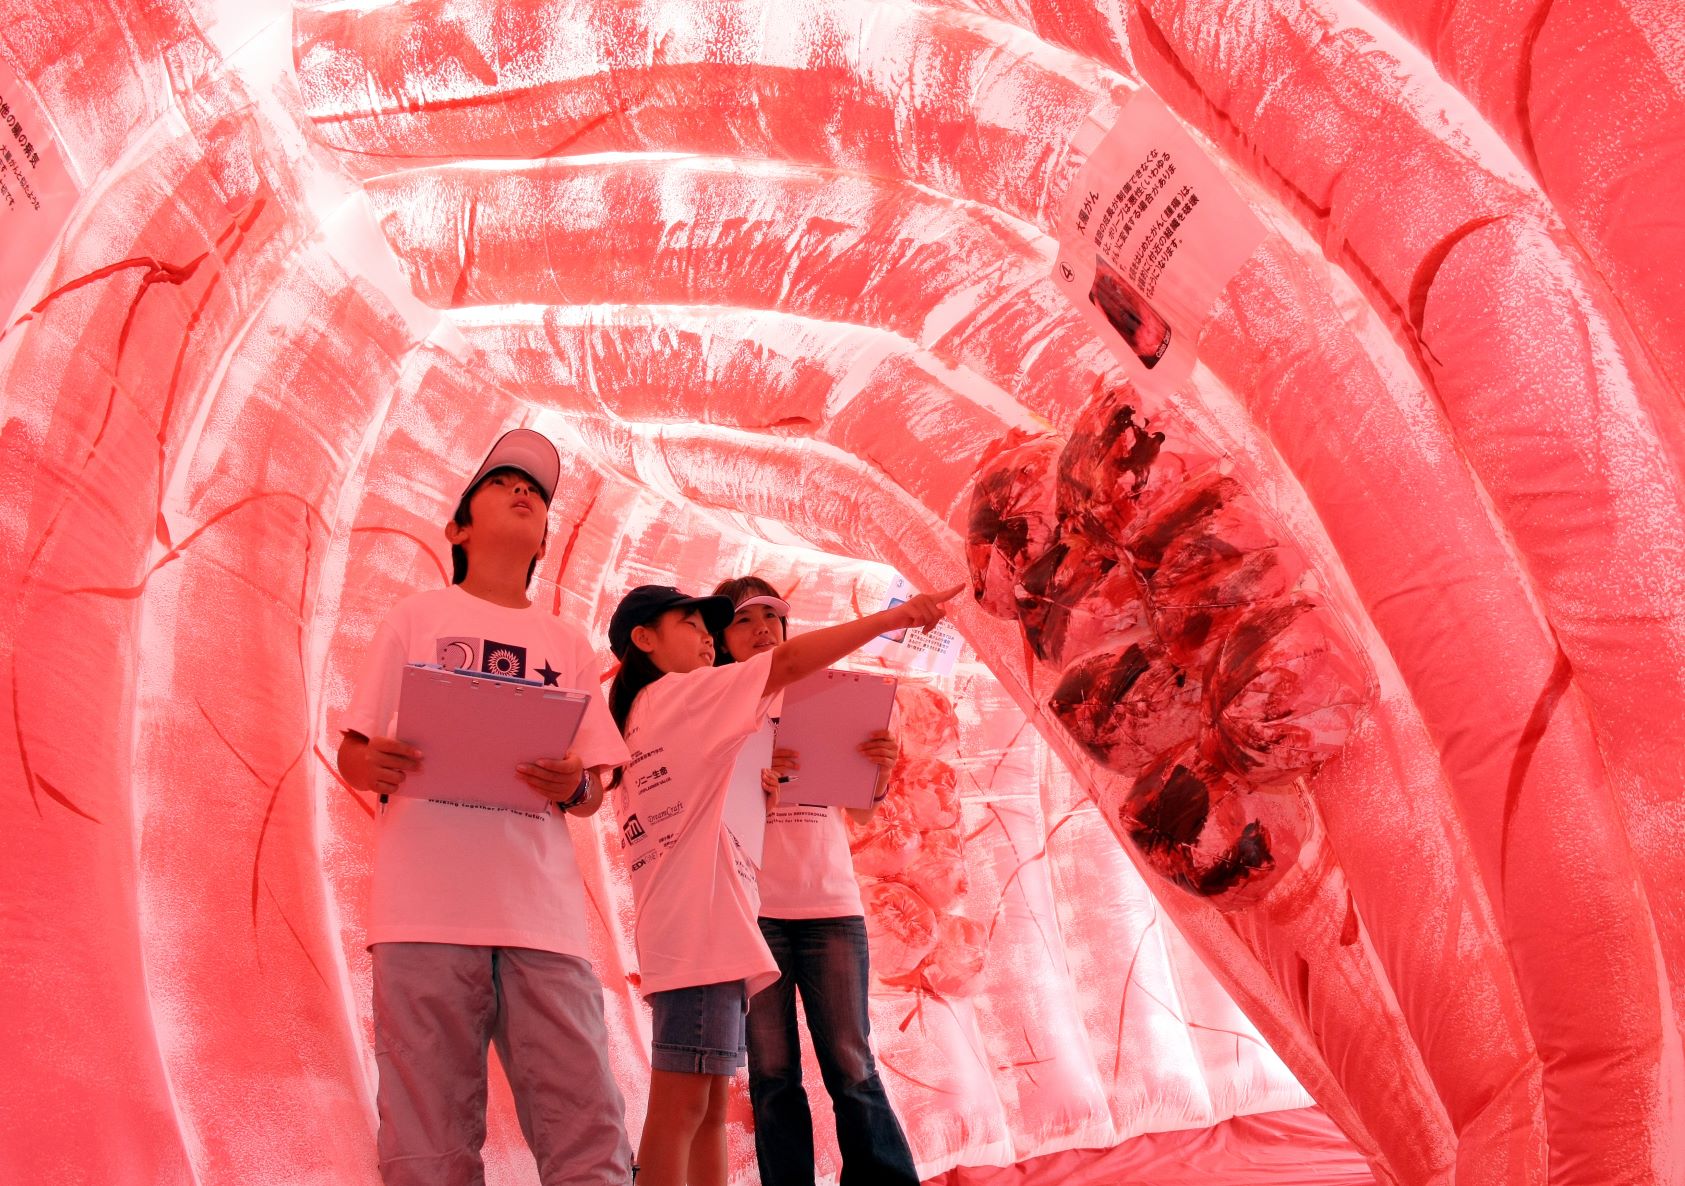 巨大な大腸のオブジェ「ジャイアント・コロン」。欧州の大腸がん患者らの非営利団体が作成。大腸内部には腫瘍（しゅよう）やポリープなどの病巣がリアルに作られた＝2009年横浜市